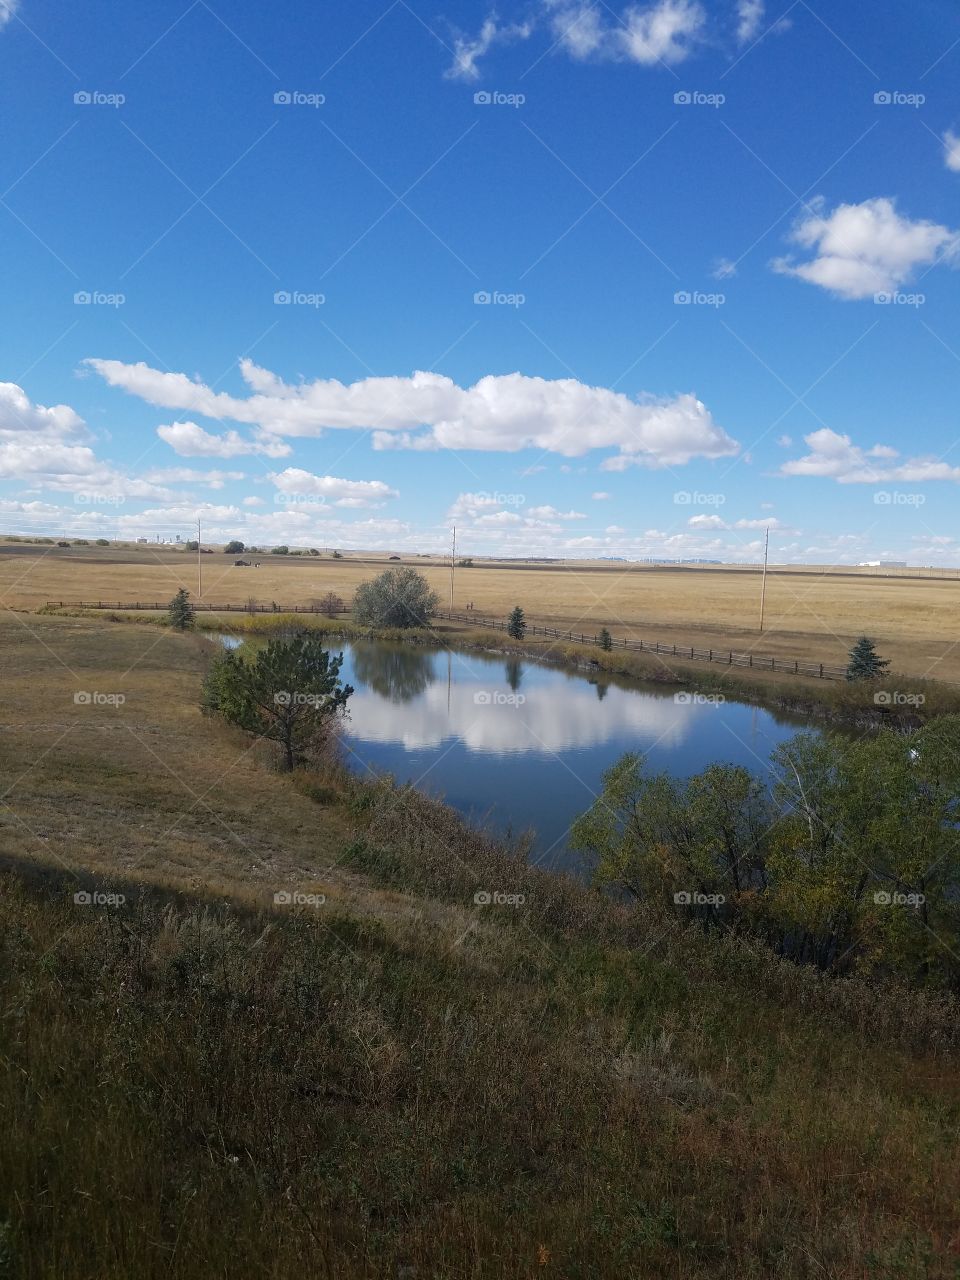 Still pond on the open prairie.